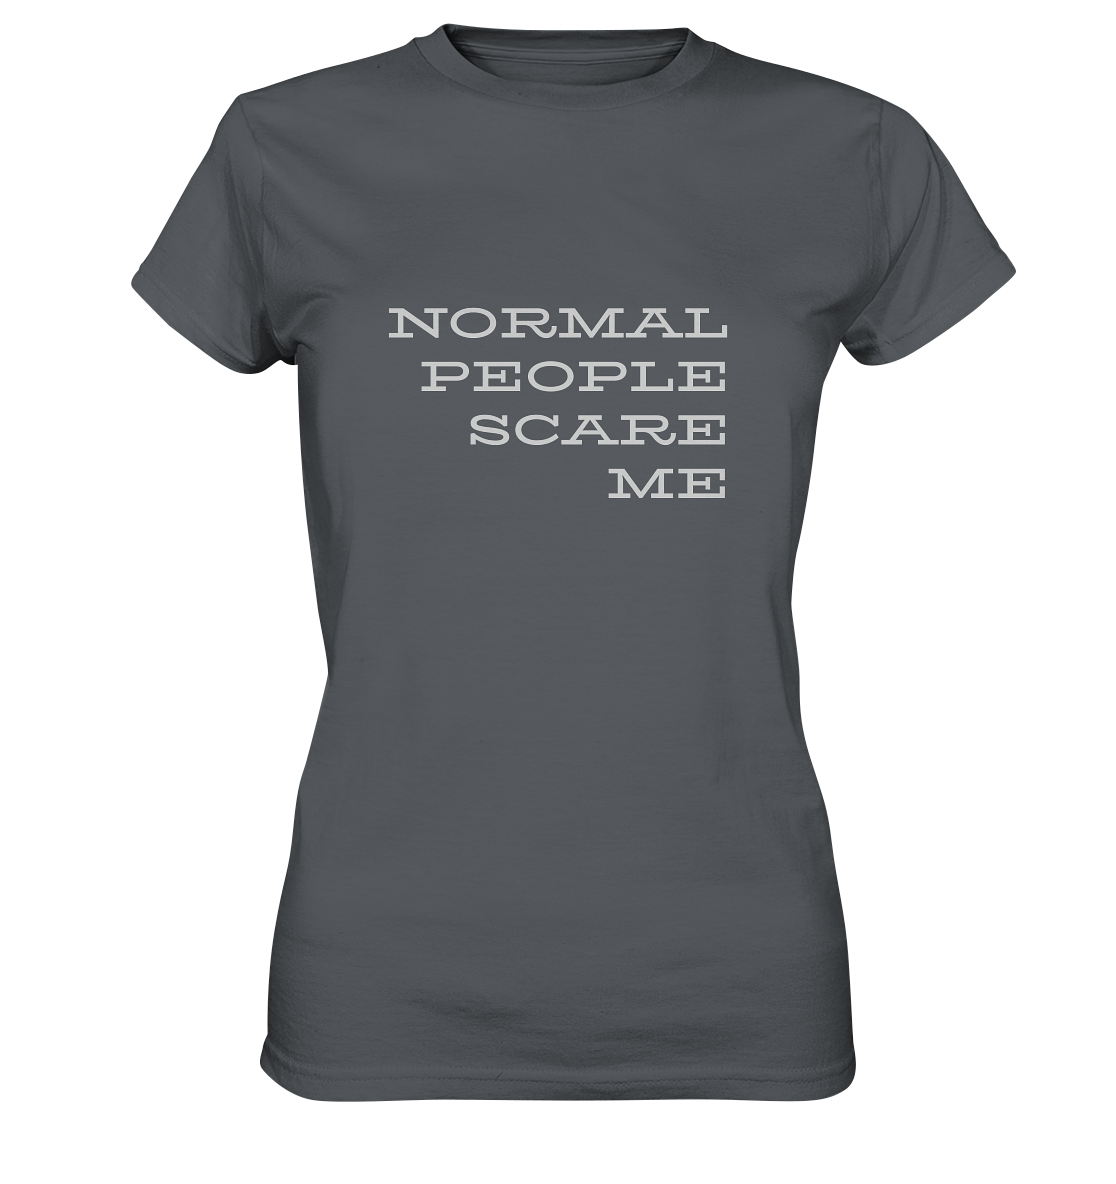 Damen-T-Shirt mit Aufdruck "Normal people scare me", grau